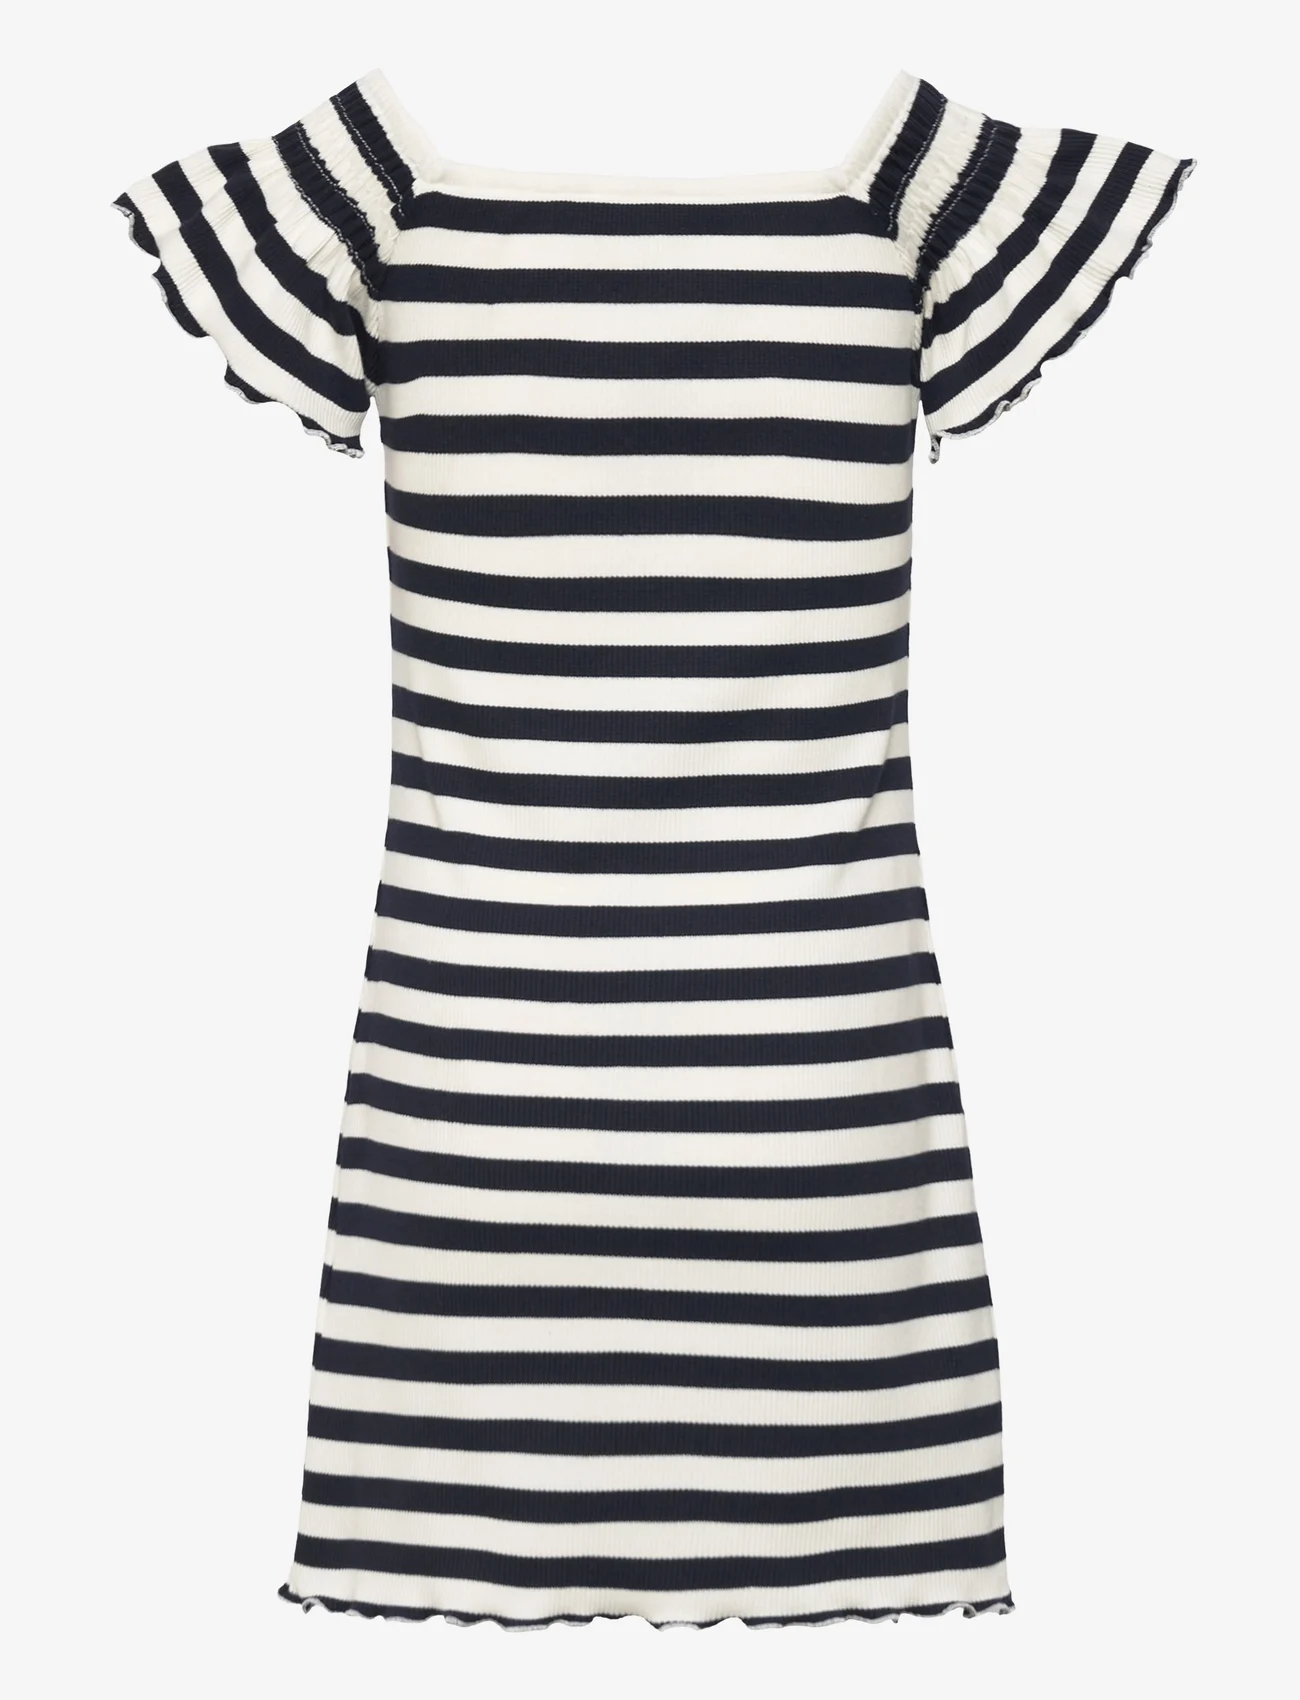 Tommy Hilfiger - OFF SHOULDER STRIPE DRESS S/S - short-sleeved casual dresses - desert sky stripe - 1